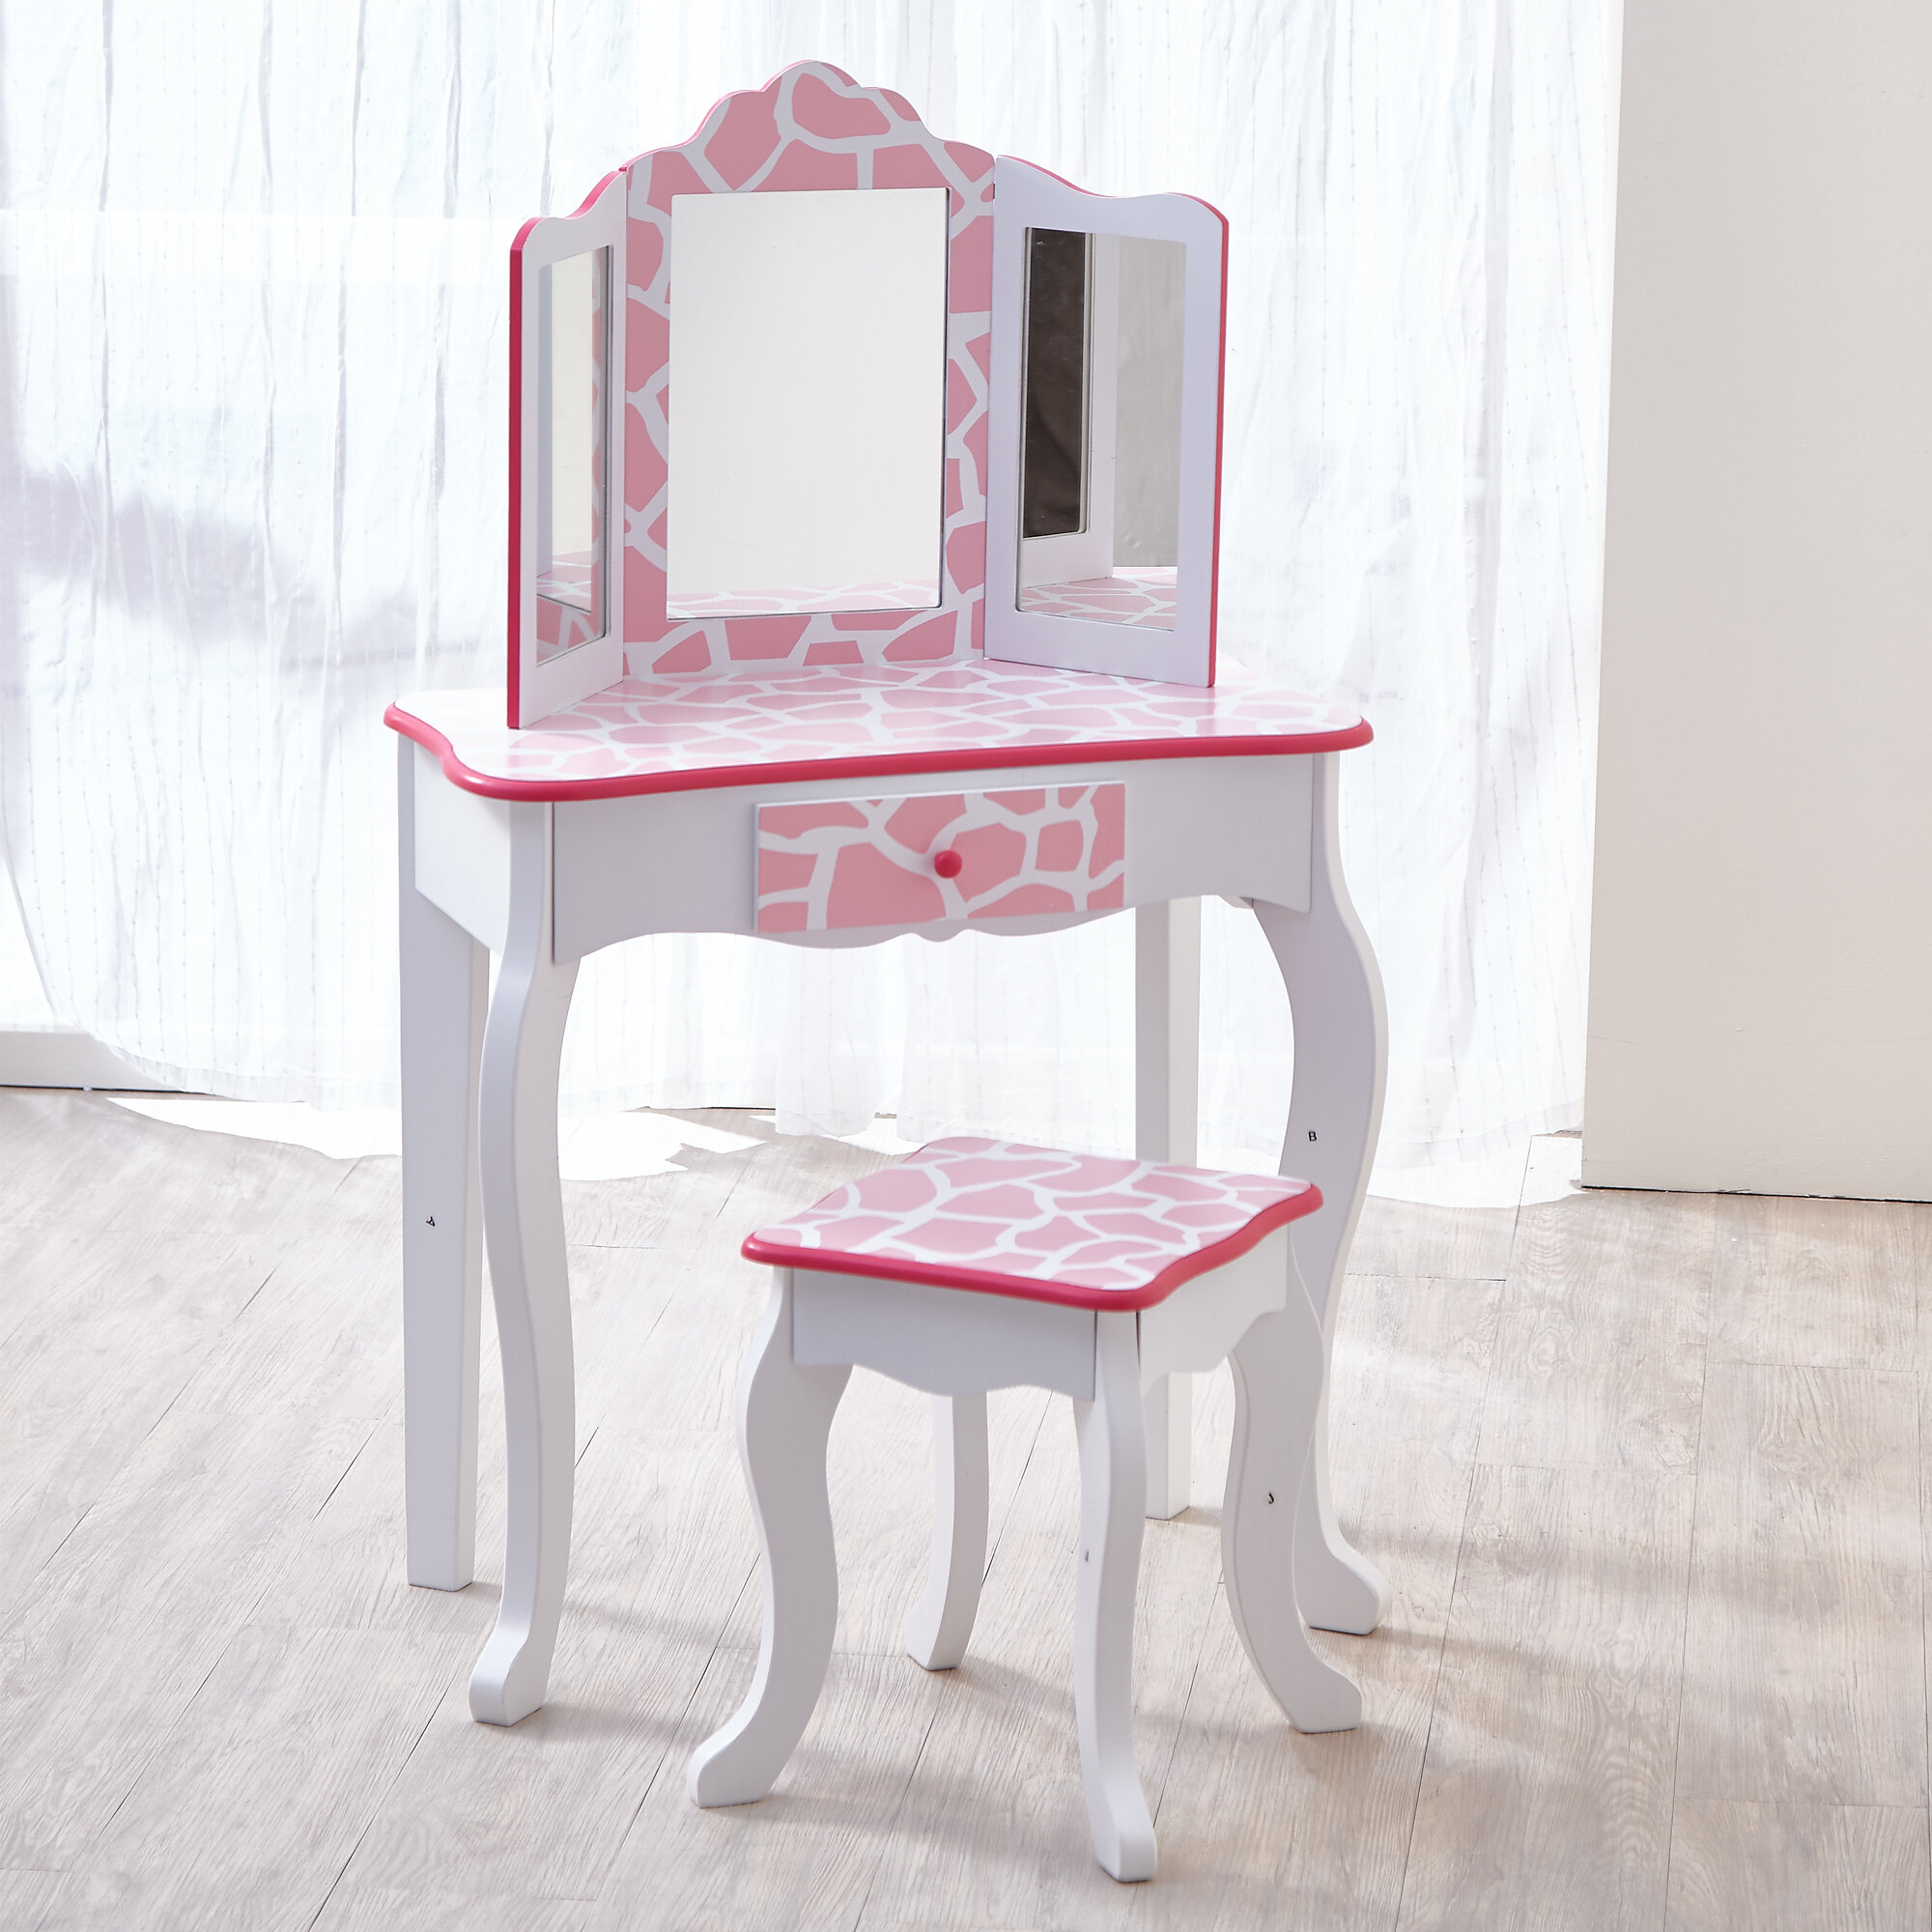 vanity desk for kids